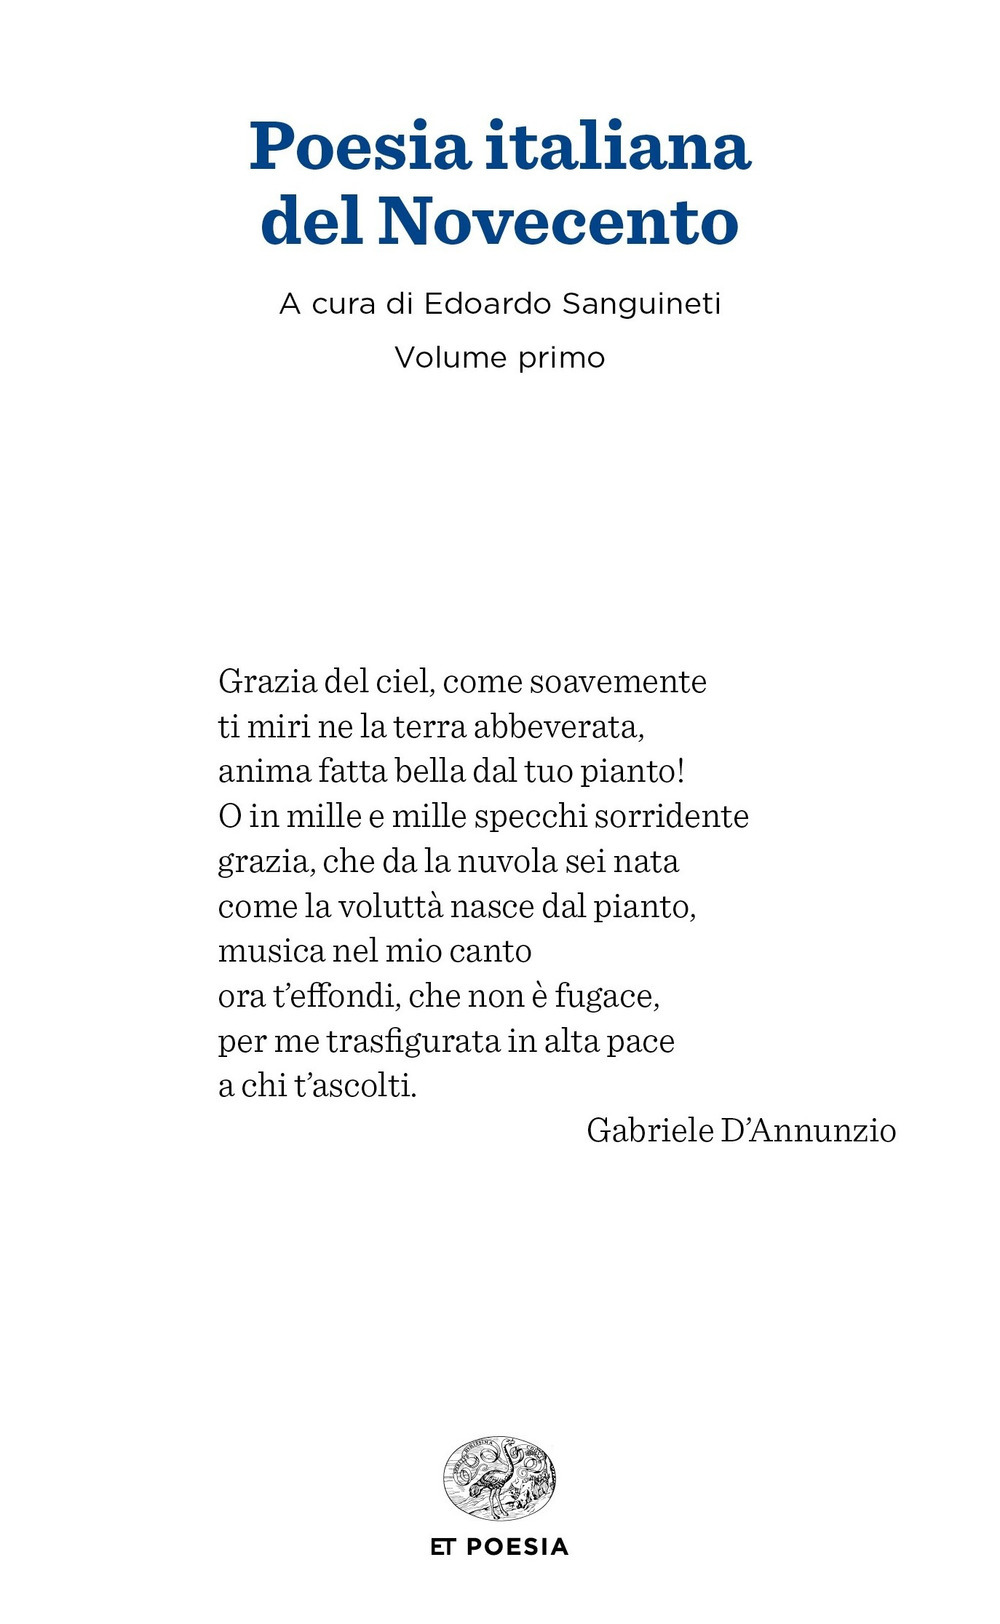 Libri Poesia Italiana Del Novecento NUOVO SIGILLATO, EDIZIONE DEL 06/06/2018 SUBITO DISPONIBILE